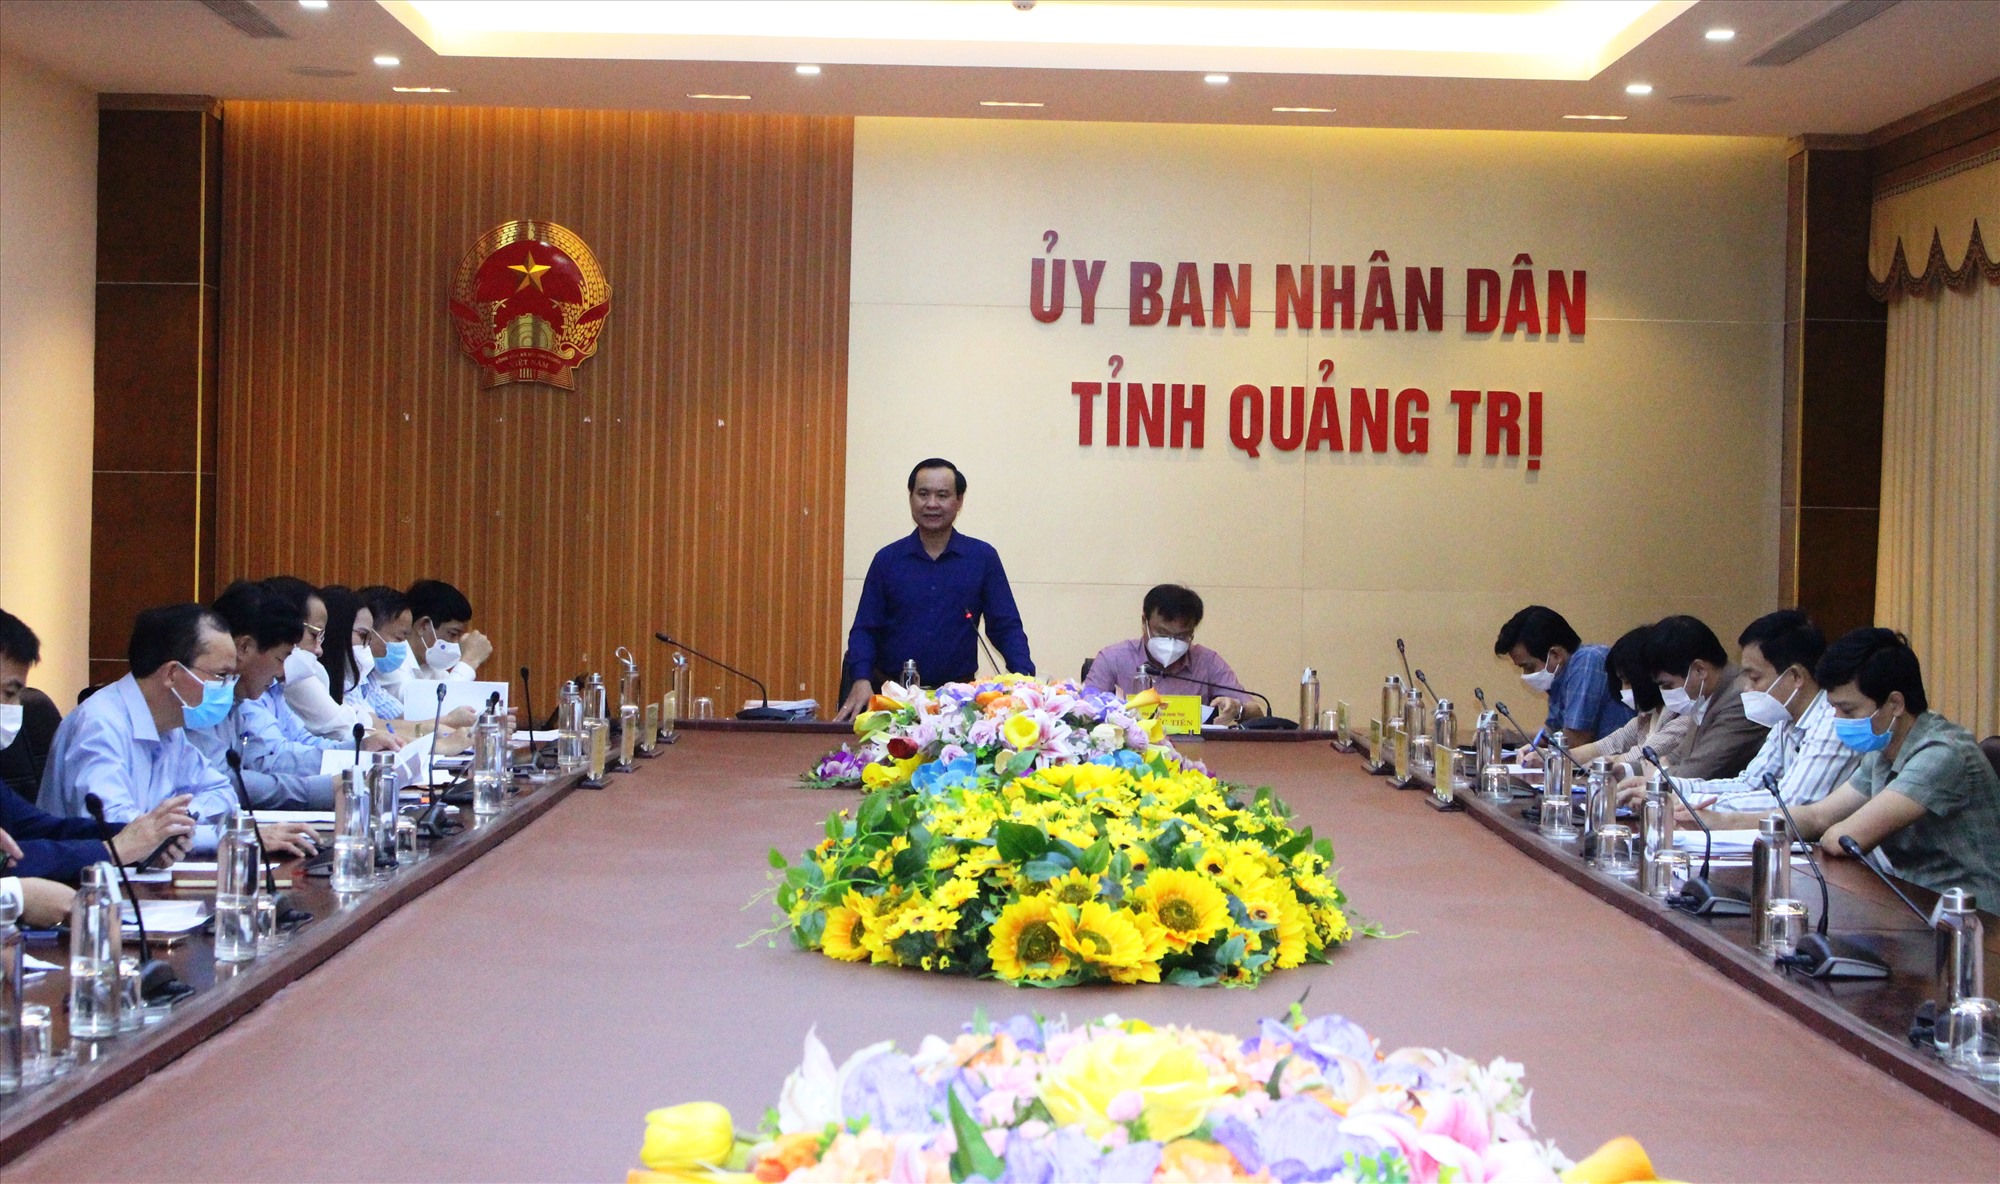 Chủ tịch UBND tỉnh Võ Văn Hưng yêu cầu các ngành, đơn vị sớm phối hợp triển khai thực hiện các nội dung của dự án - Ảnh: T.T